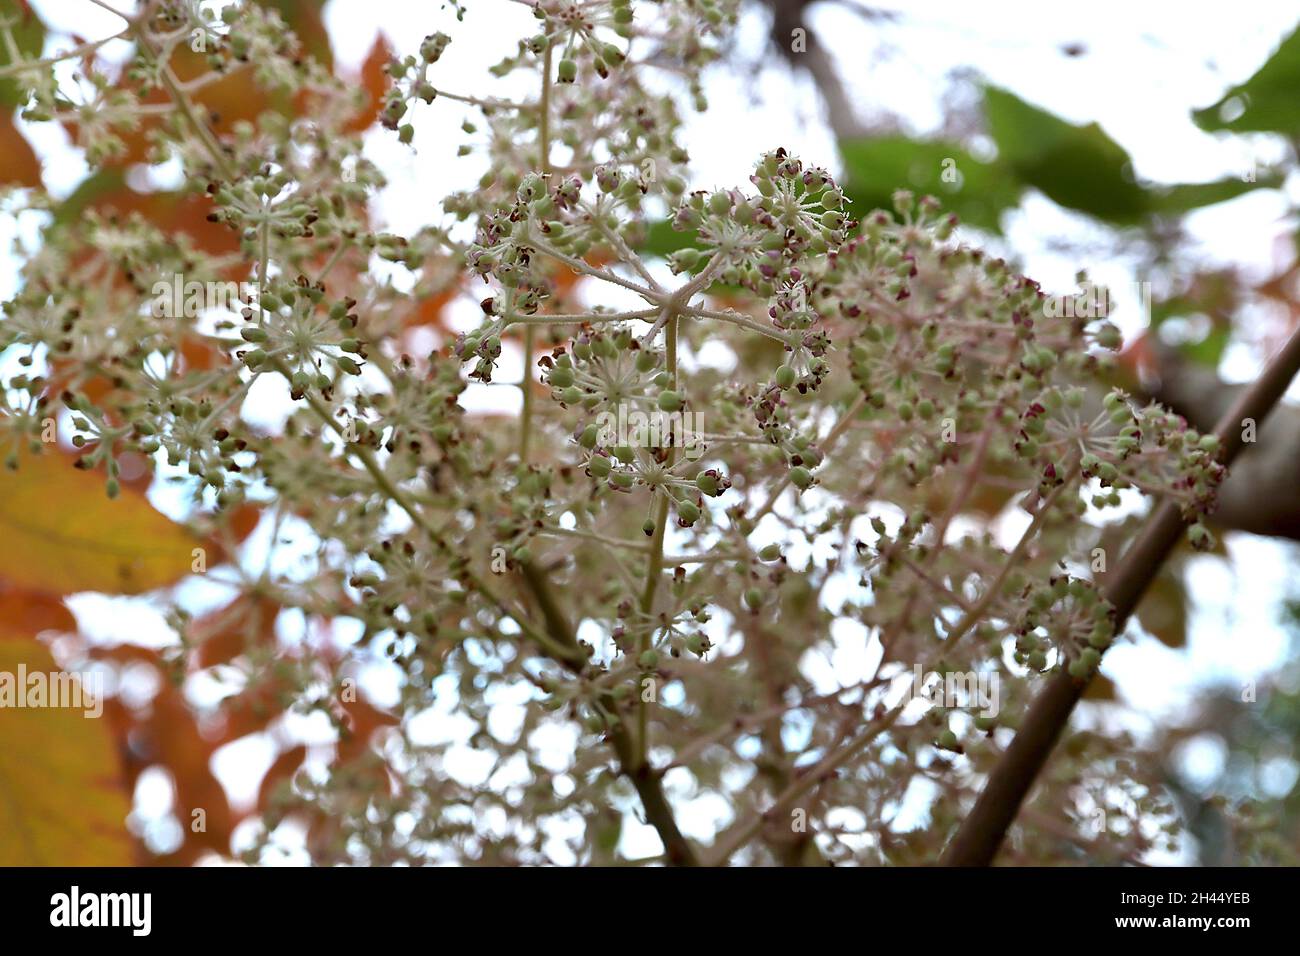 Aralia elata Angelica Baum – auftauchende dunkelviolette Blüten aus blassgrünen Blütenknospen, kugelförmigen Dolden, Oktober, England, Großbritannien Stockfoto